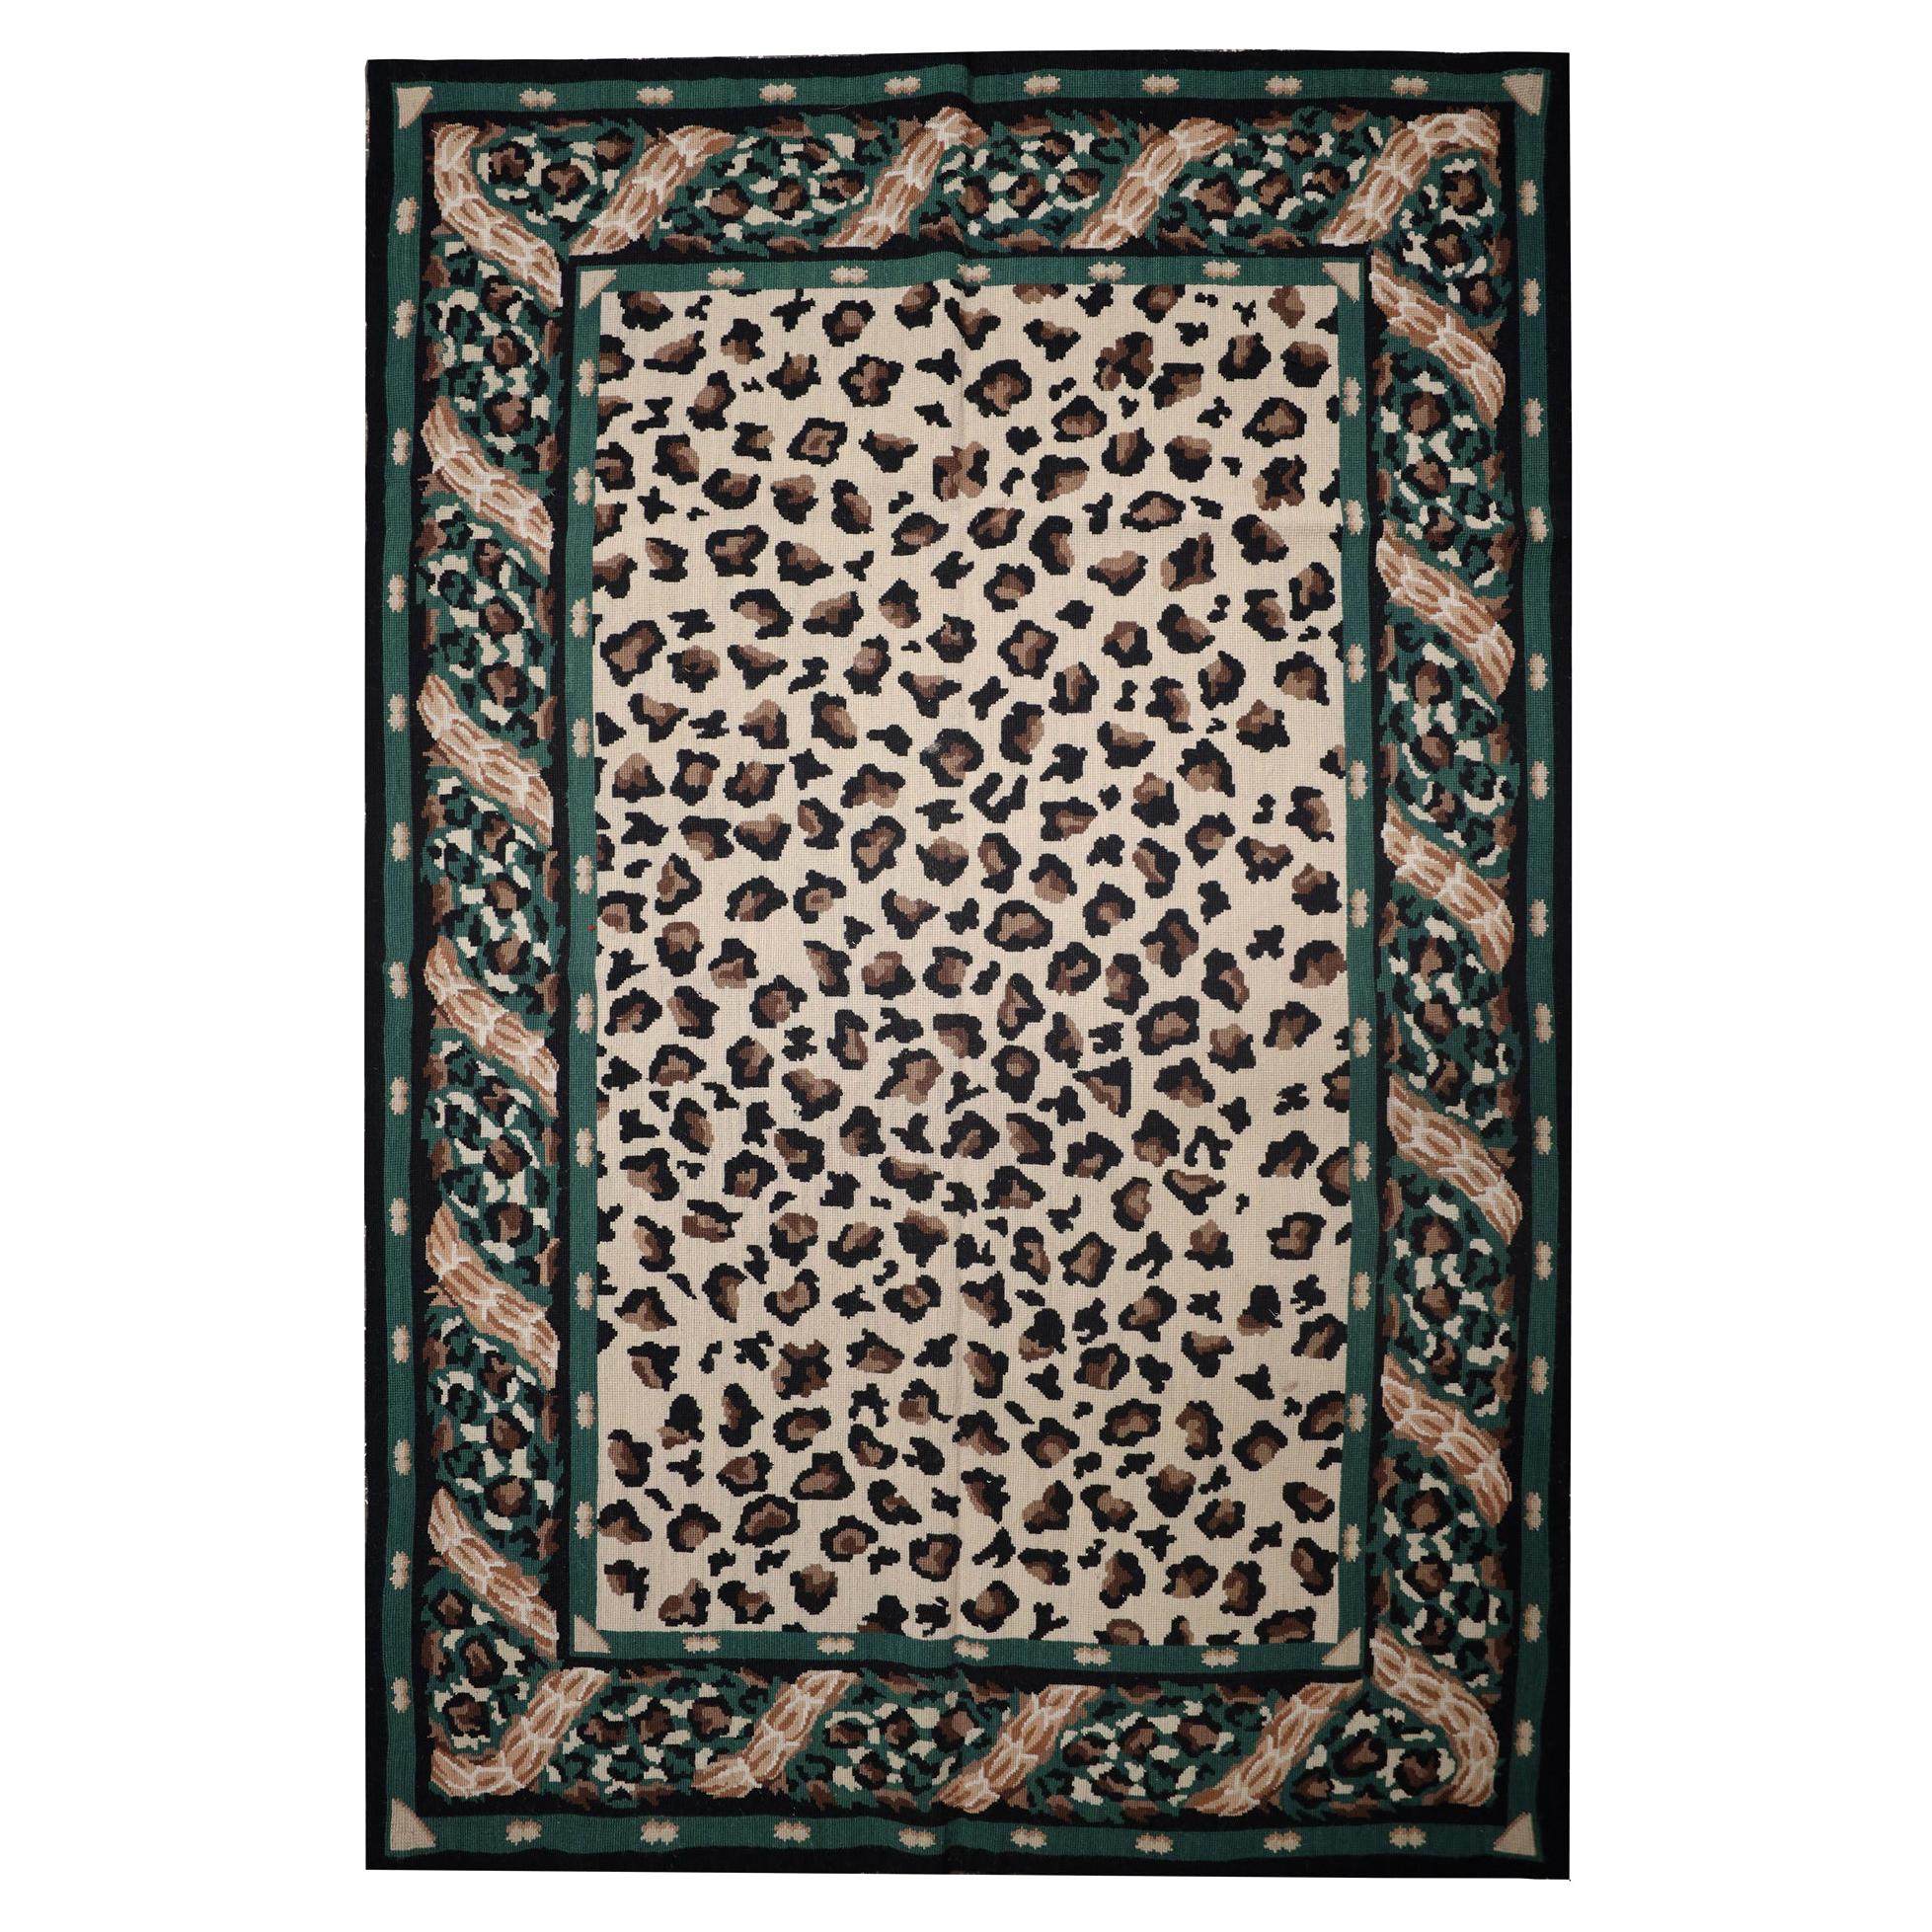 Moderner handgefertigter Teppich aus Gobelinstickerei, grüner Teppich mit Leopardenmuster